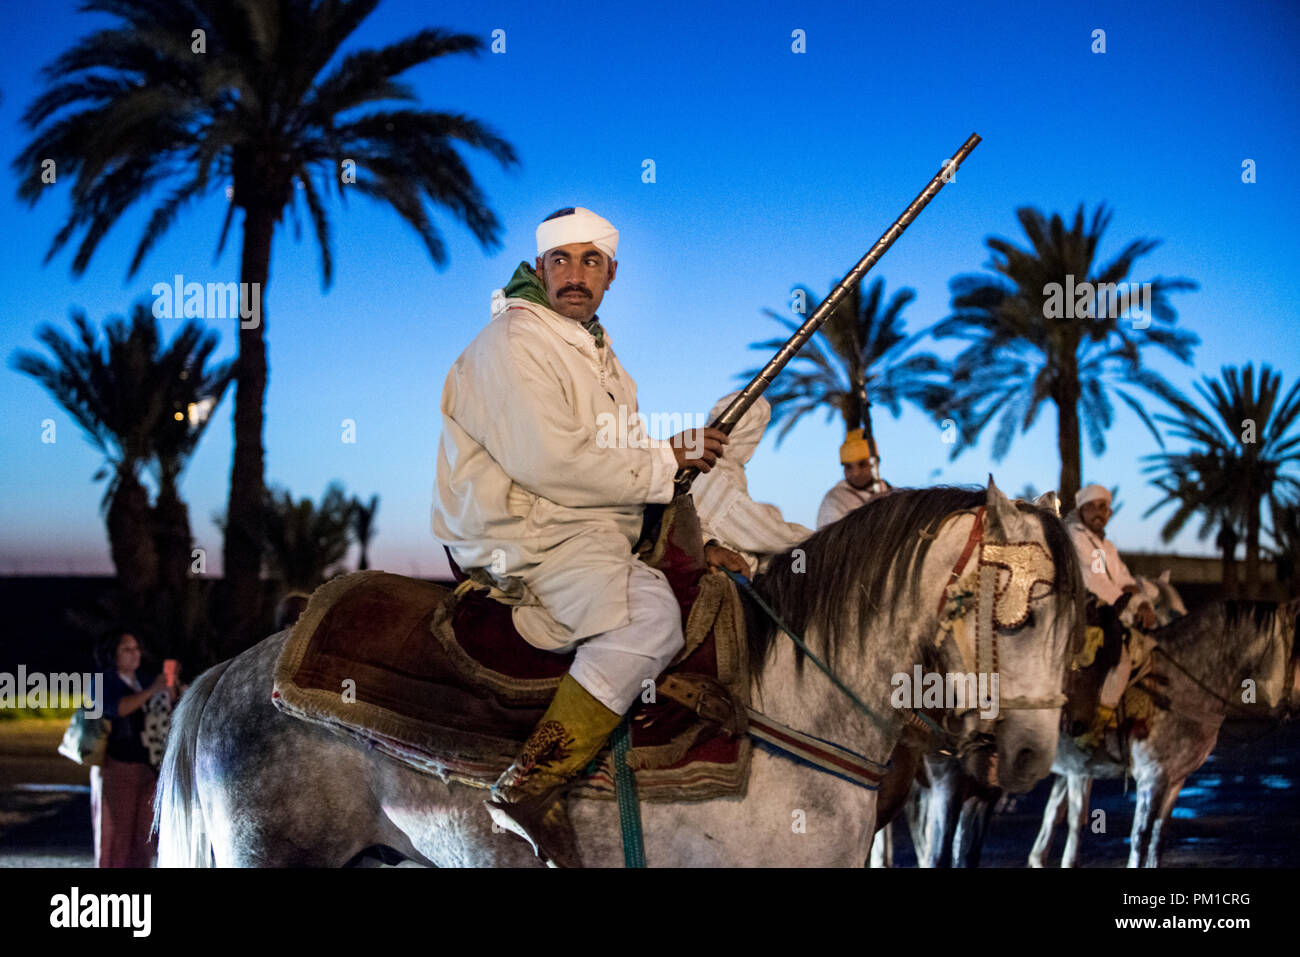 26-02-15, Marrakech, Marocco. Uomo in abito tradizionale a cavallo con la pistola all'attrazione turistica di Fantasia / Chez Ali. Foto © Simon Grosset Foto Stock